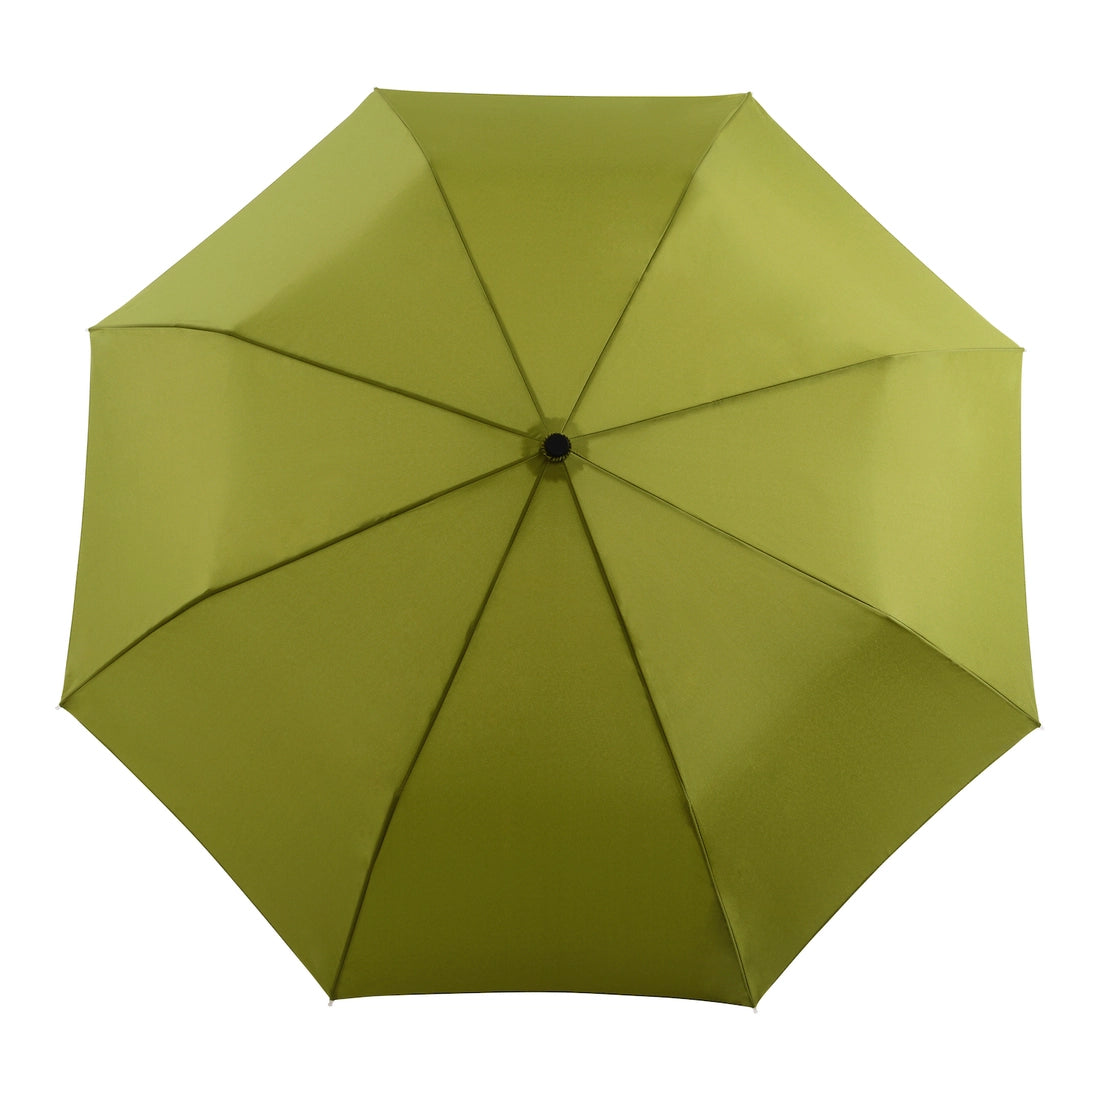 Original Duckhead Umbrella - Olive